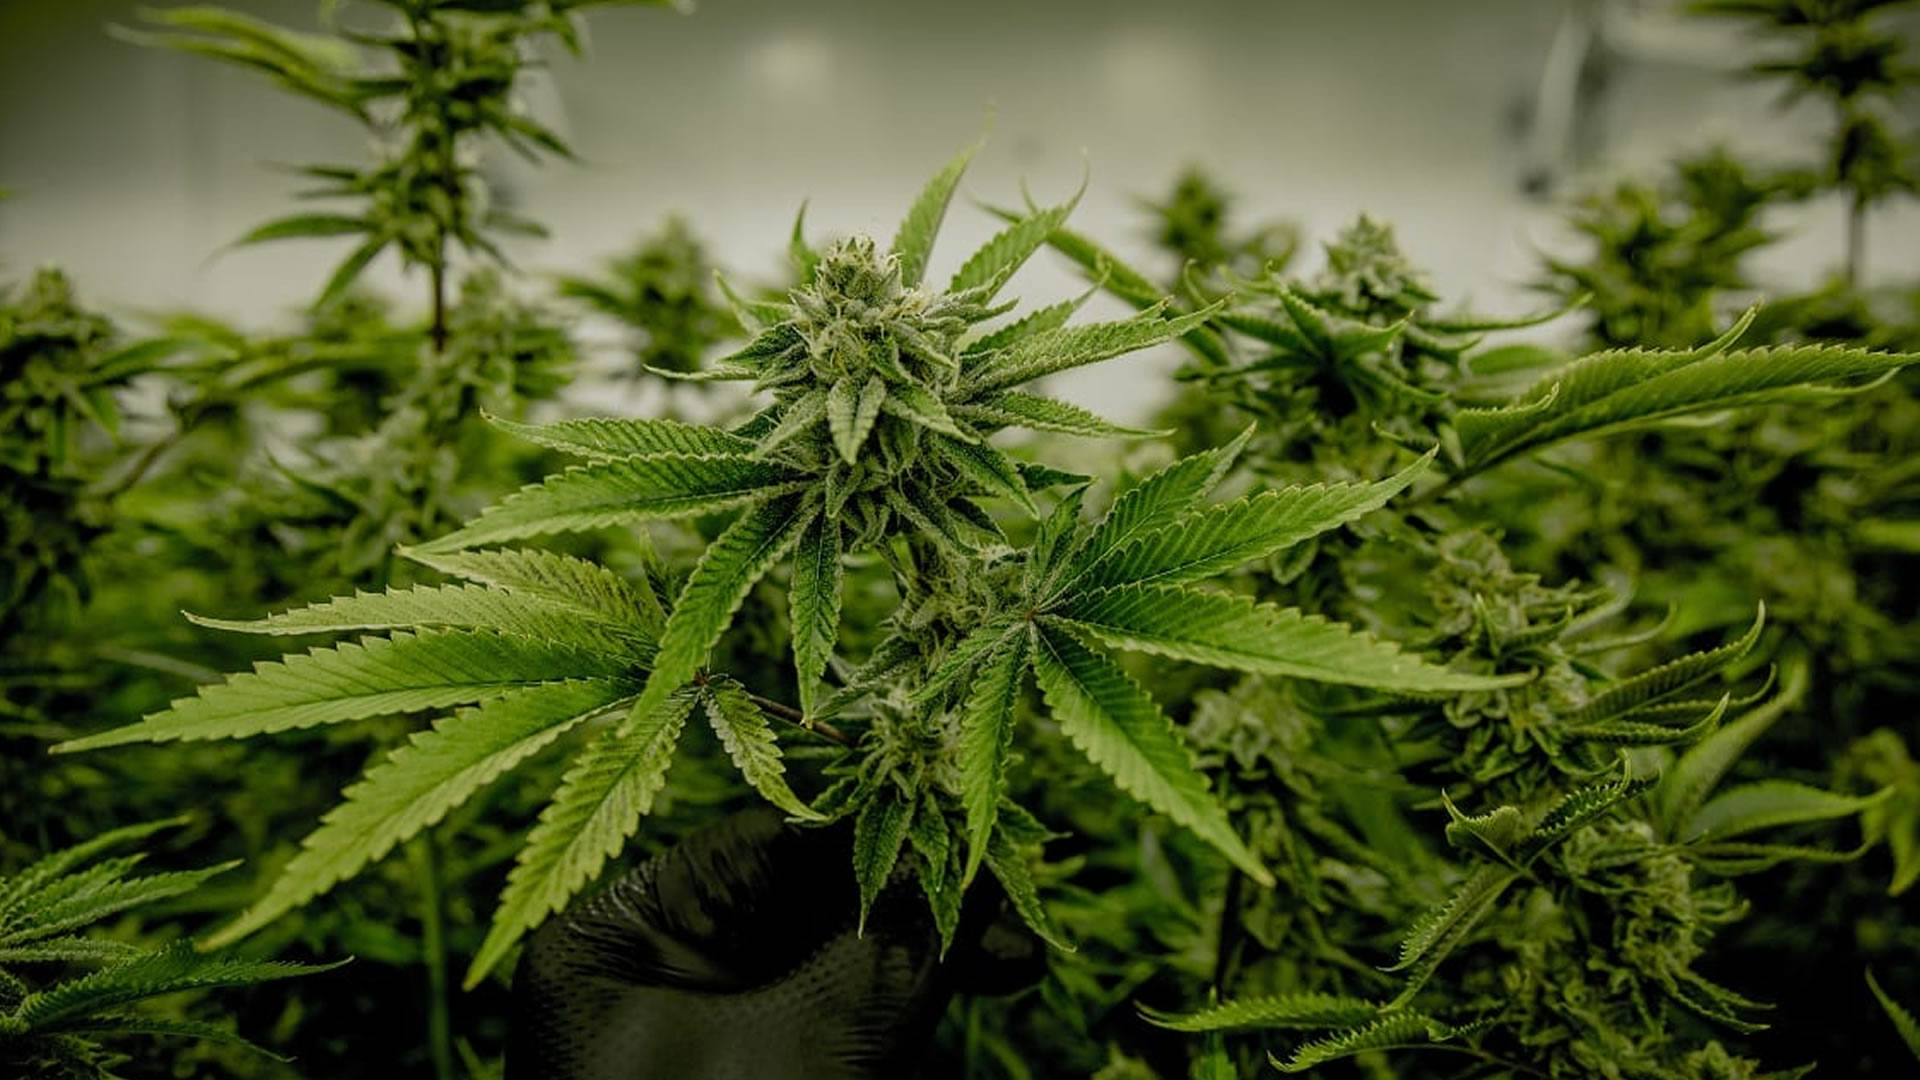 Industria de cannabis medicinal en Colombia, busca la aprobación del decreto para la exportación. Imagen de referencia.